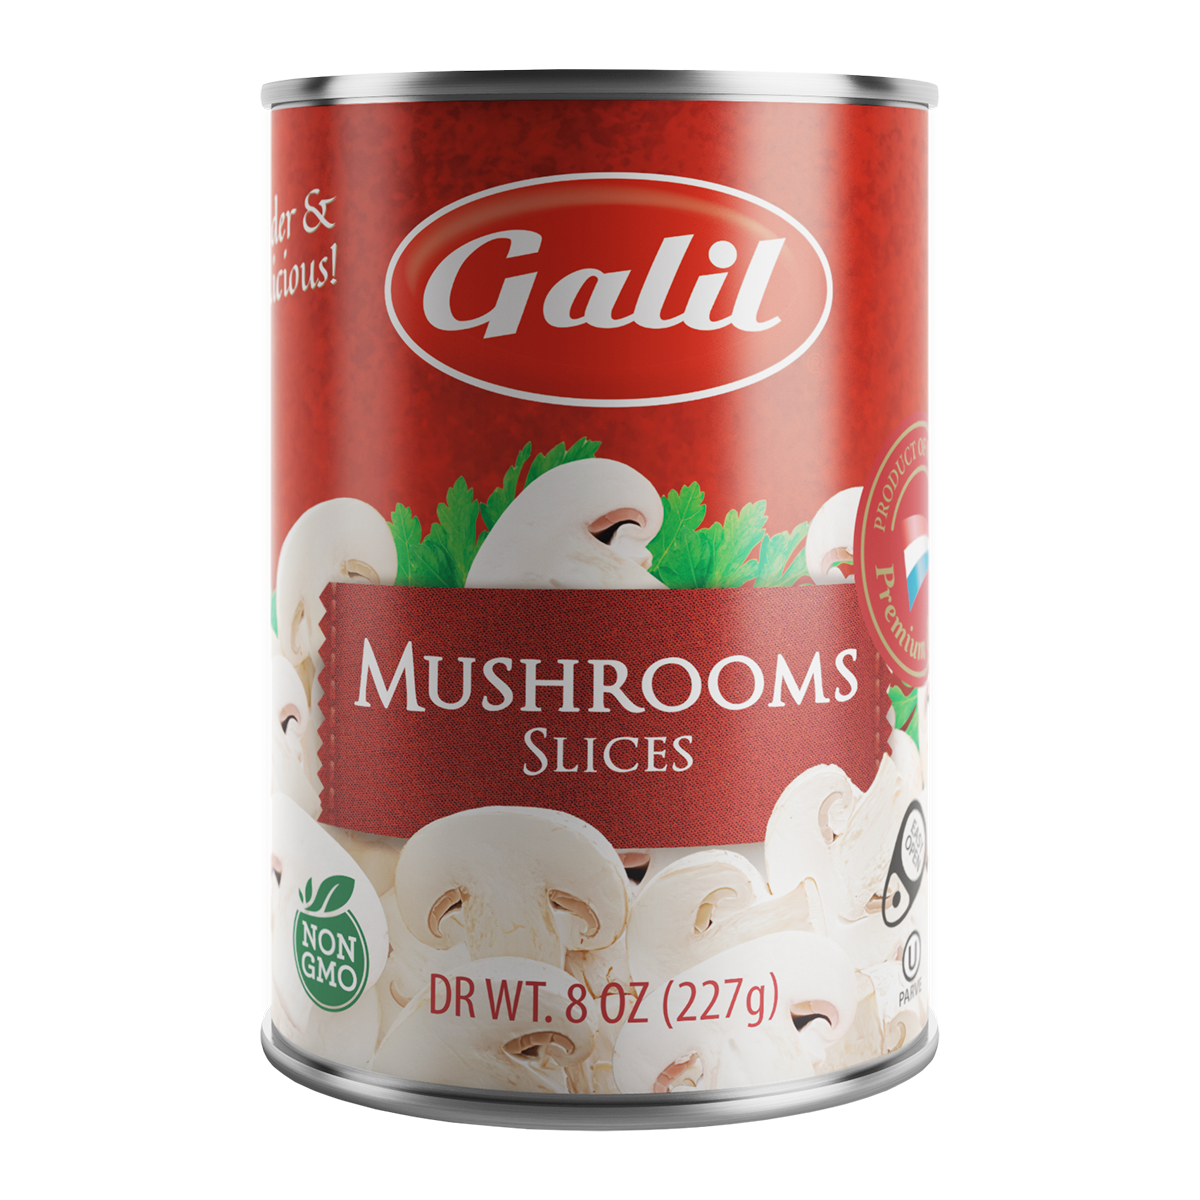 Mushrooms | Slices | 8 oz | Galil